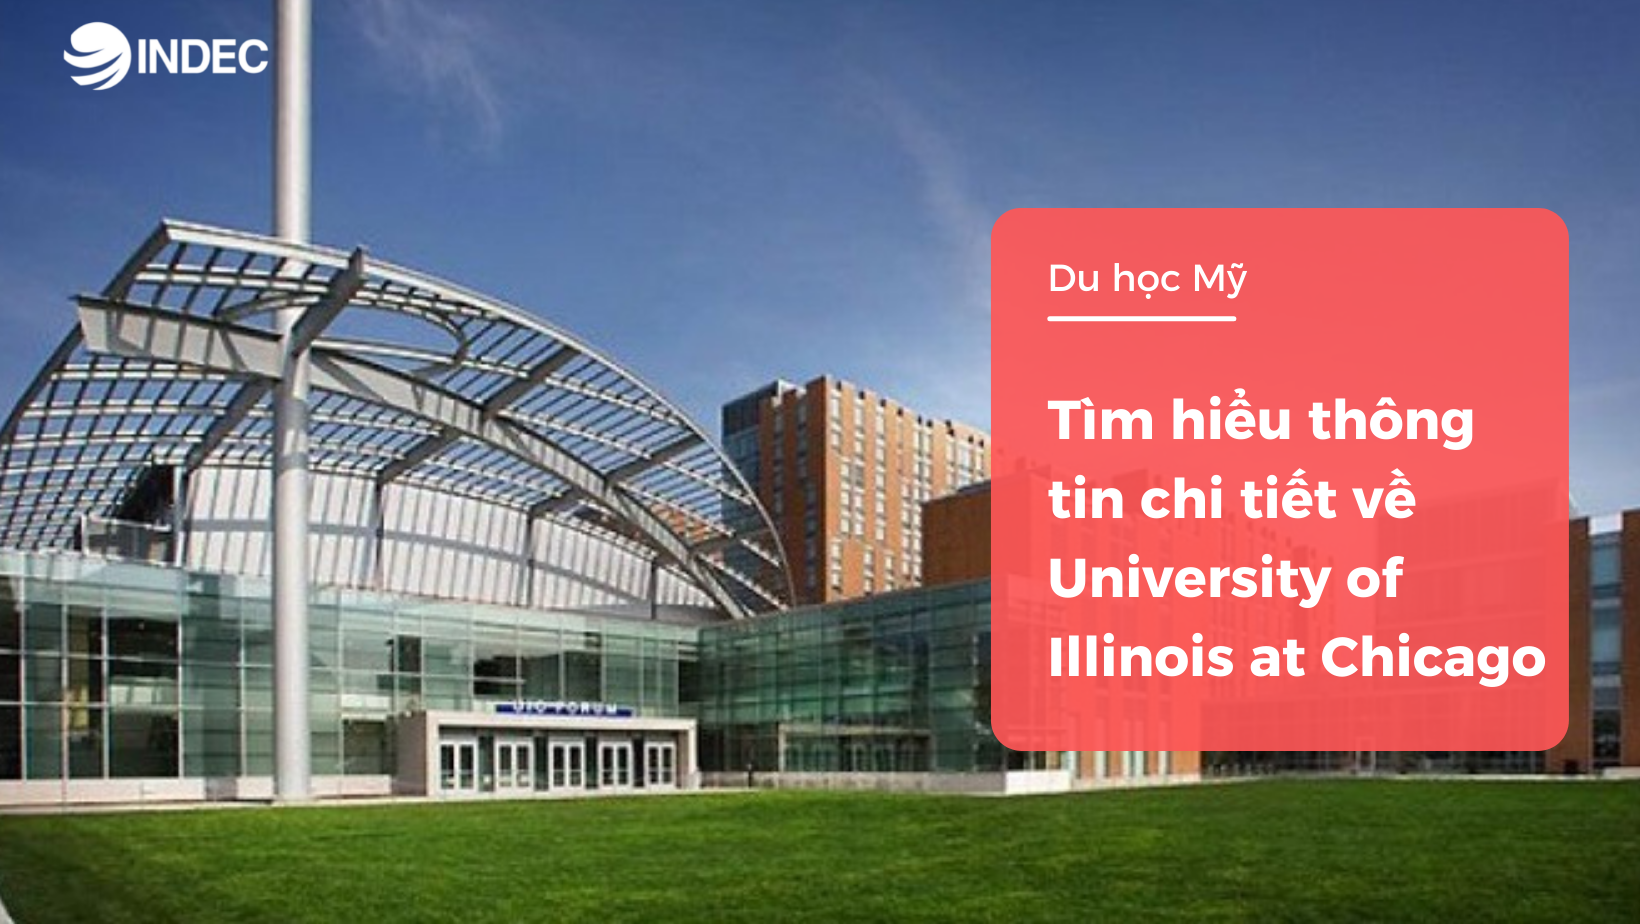 Tìm hiểu thông tin chi tiết về University of Illinois at Chicago 